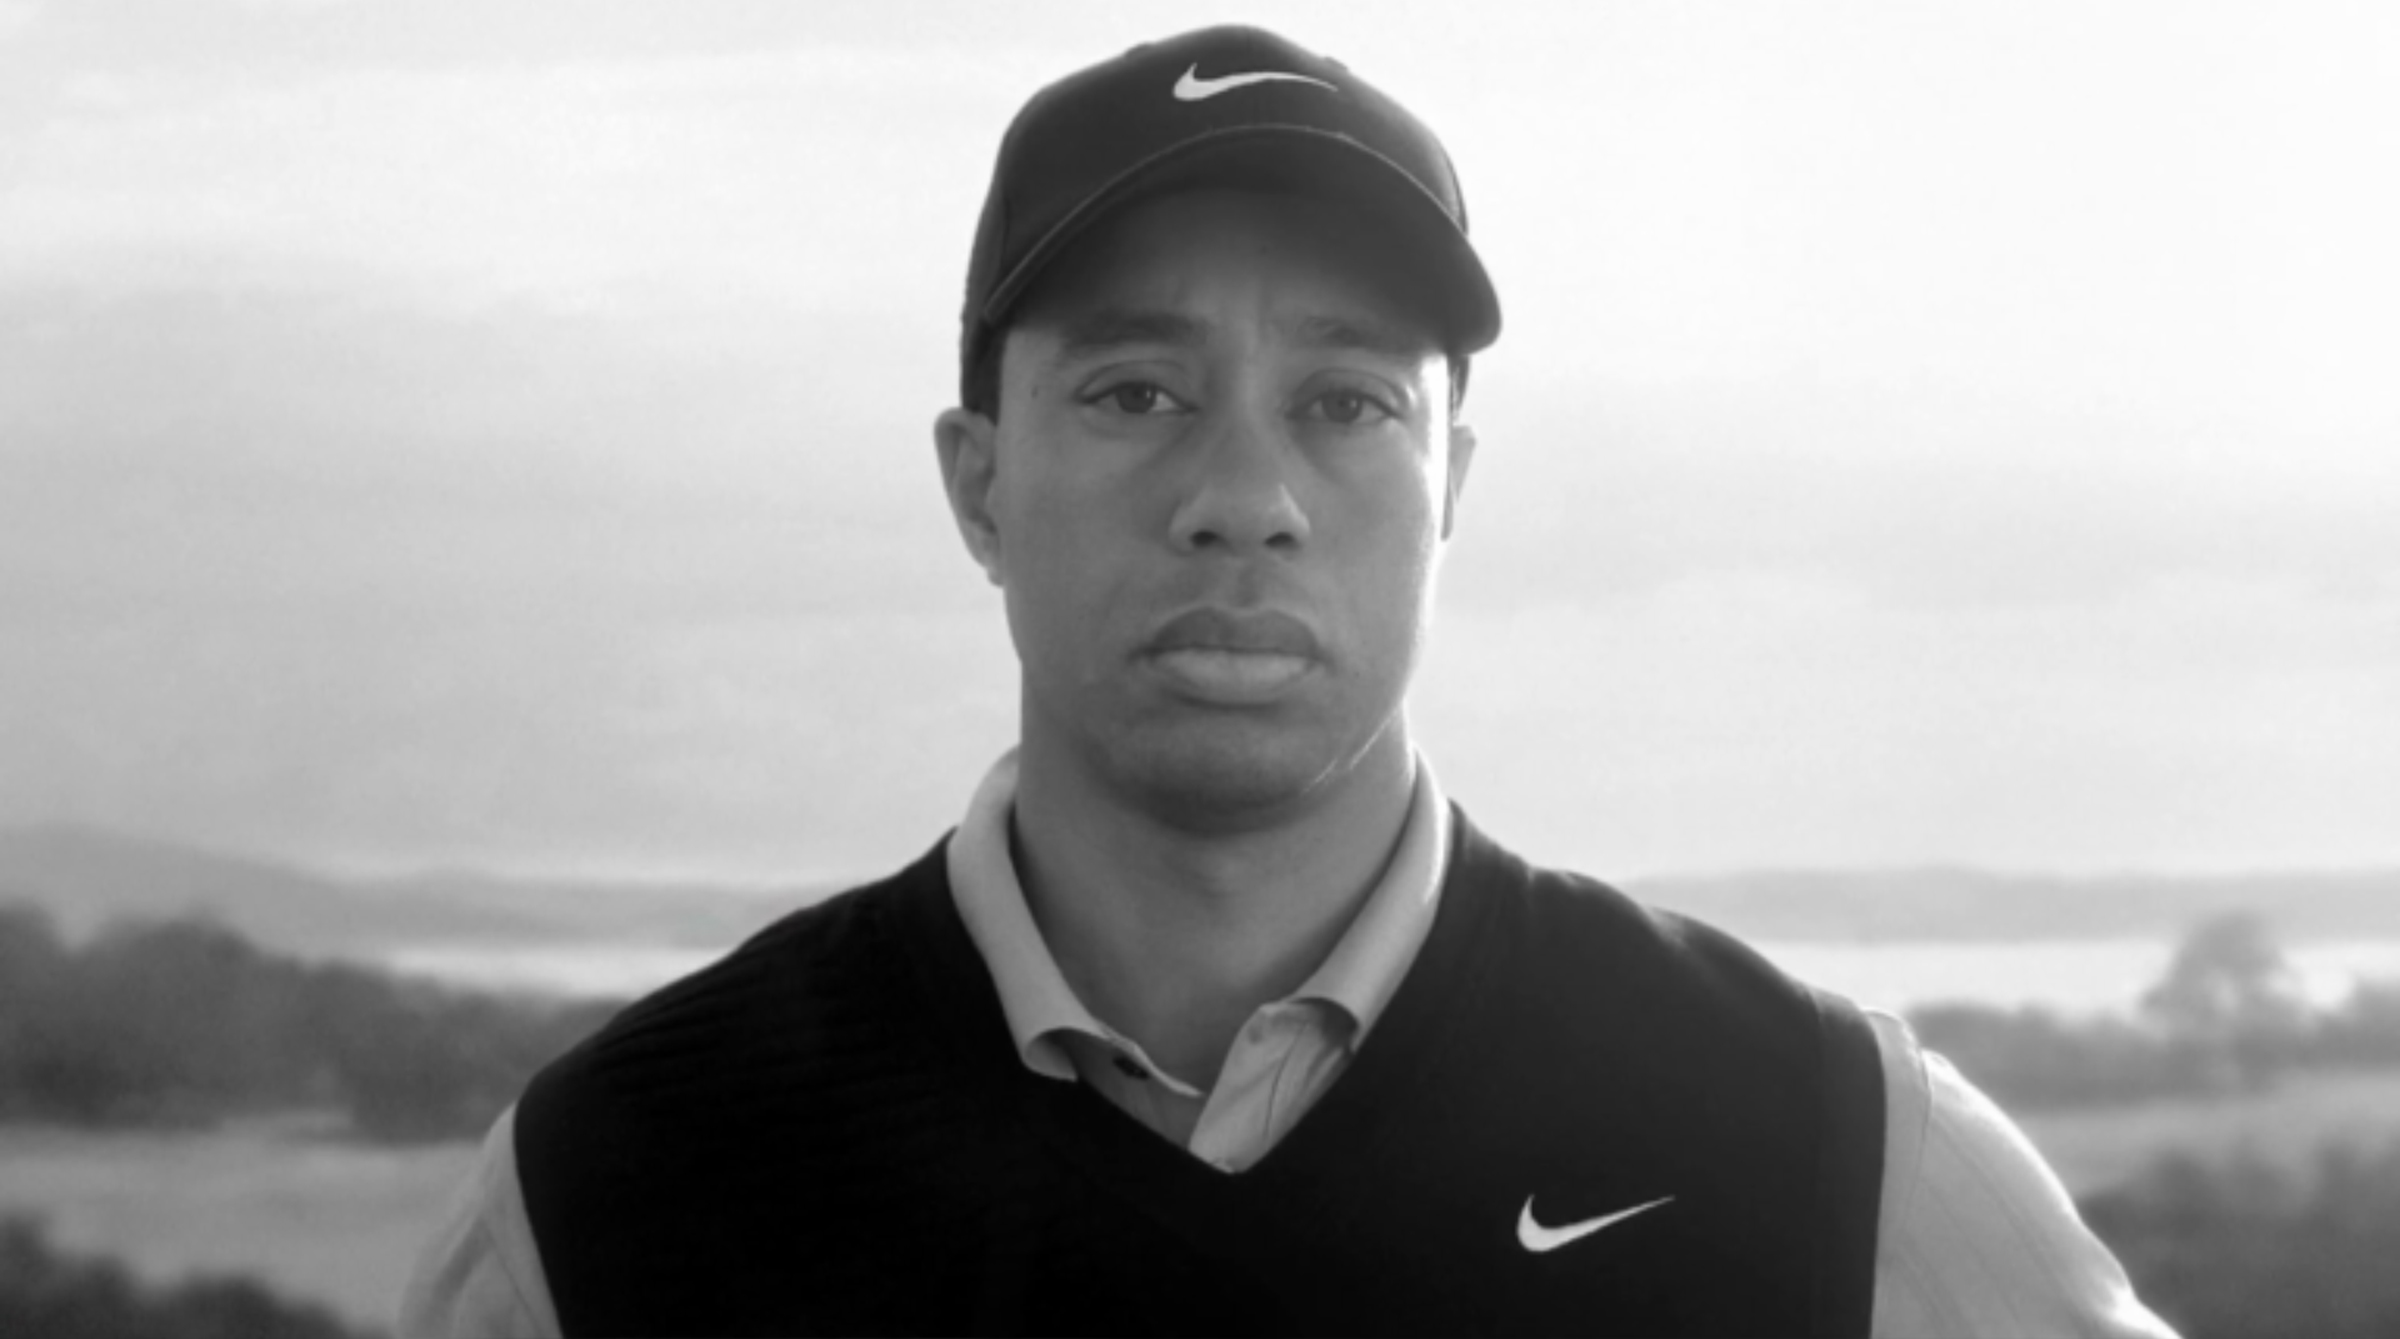 reklamfilm, Otrohet, Tiger Woods, comeback, Elin Nordegren, Golf, Nike